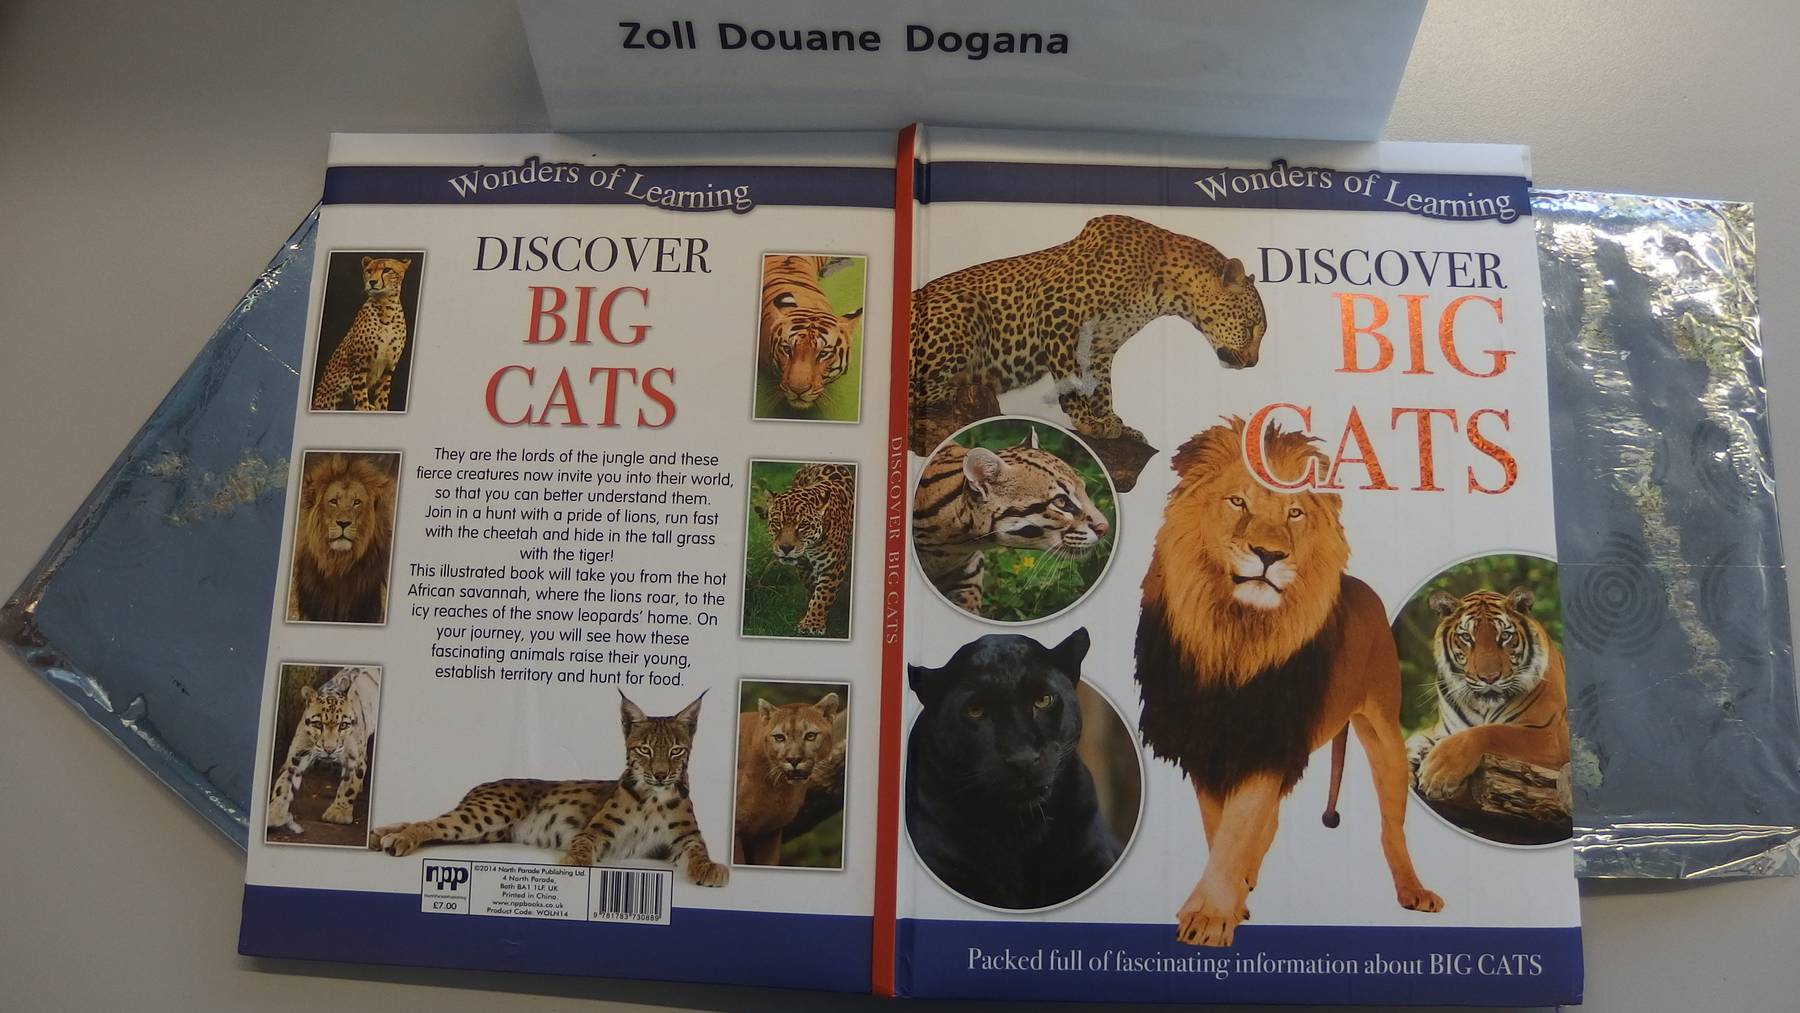 Die Drogen waren u.a. in diesem Buch über Wildkatzen versteckt.